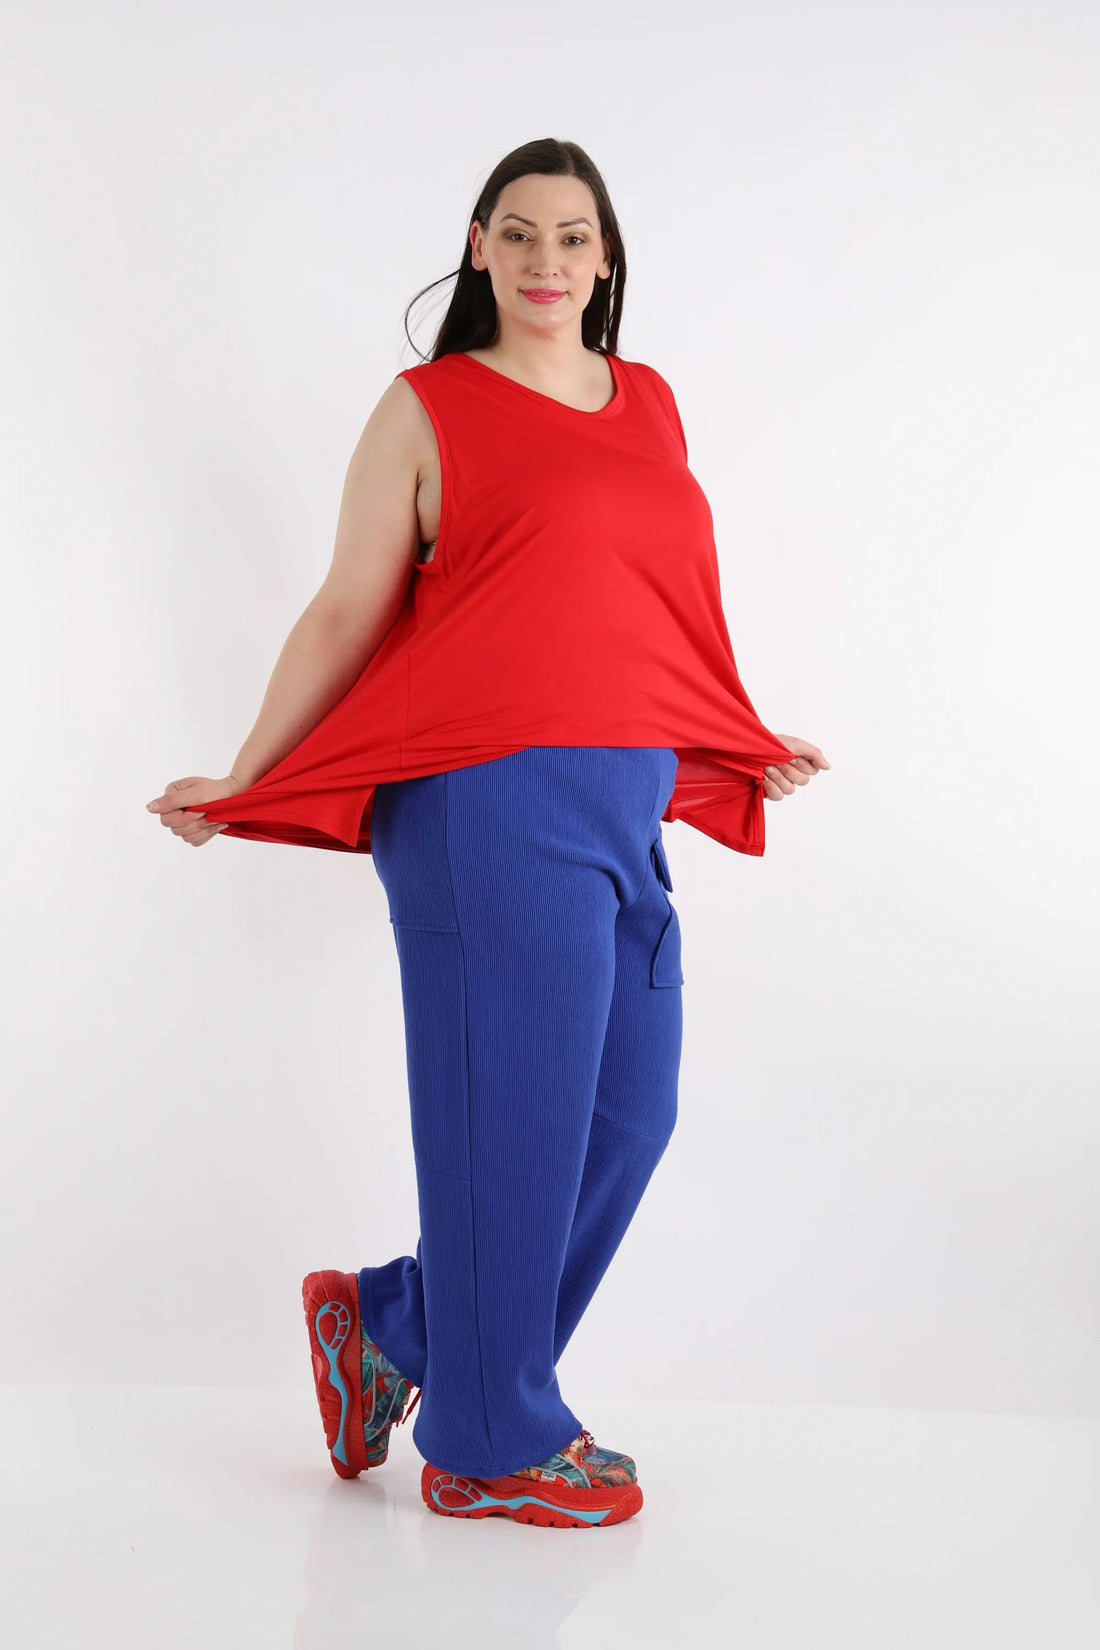 Hose von AKH Fashion aus Baumwolle in gerader Form, 1252.06907, Blau, Unifarben, Schick